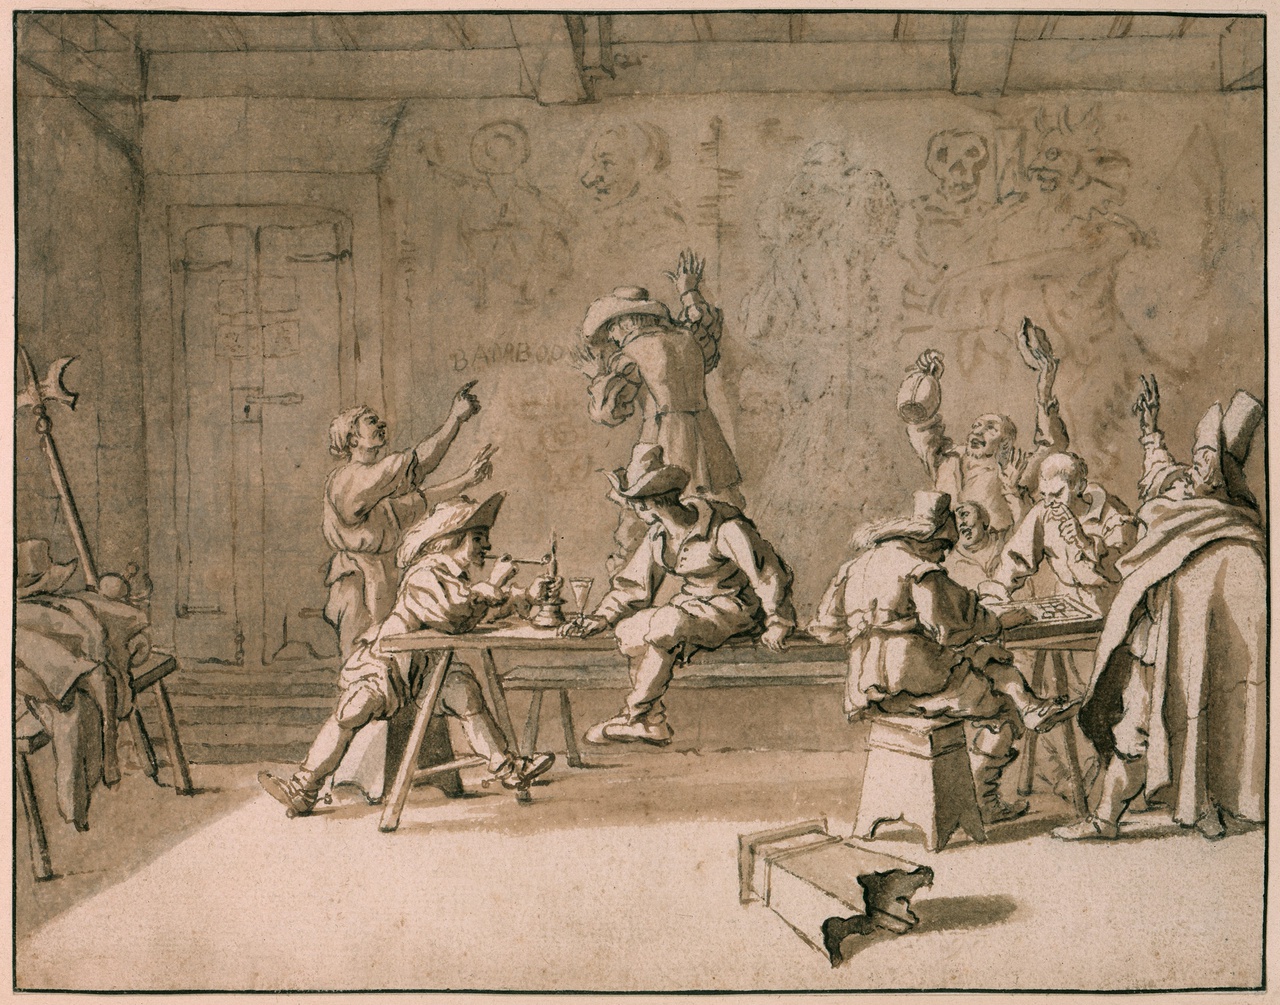 Pieter van Laer, De Bentvueghels in een Romeinse herberg